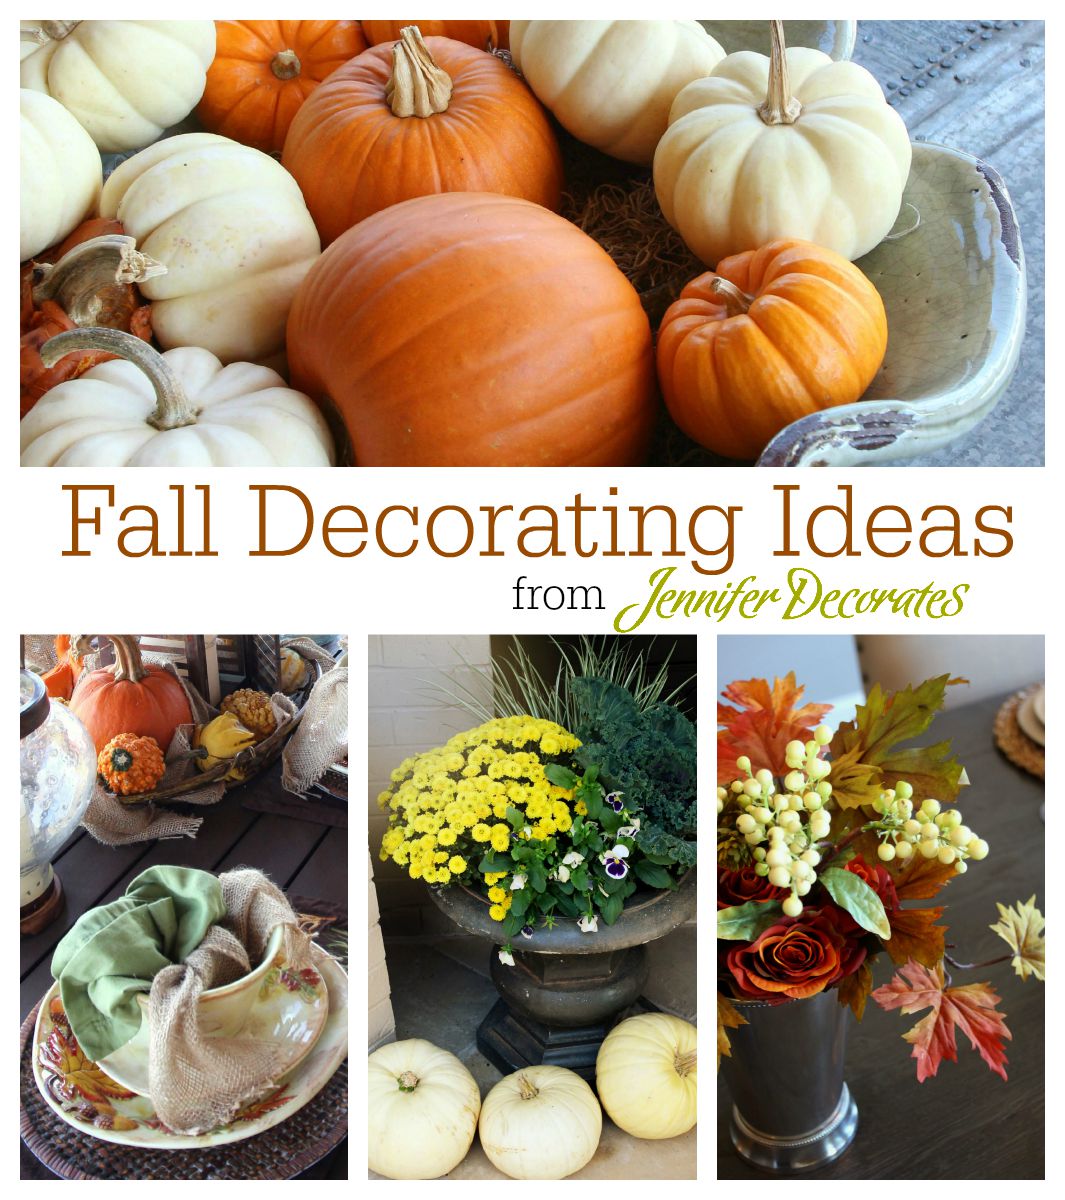 Fall decorating ideas from Jennifer Decorates.com